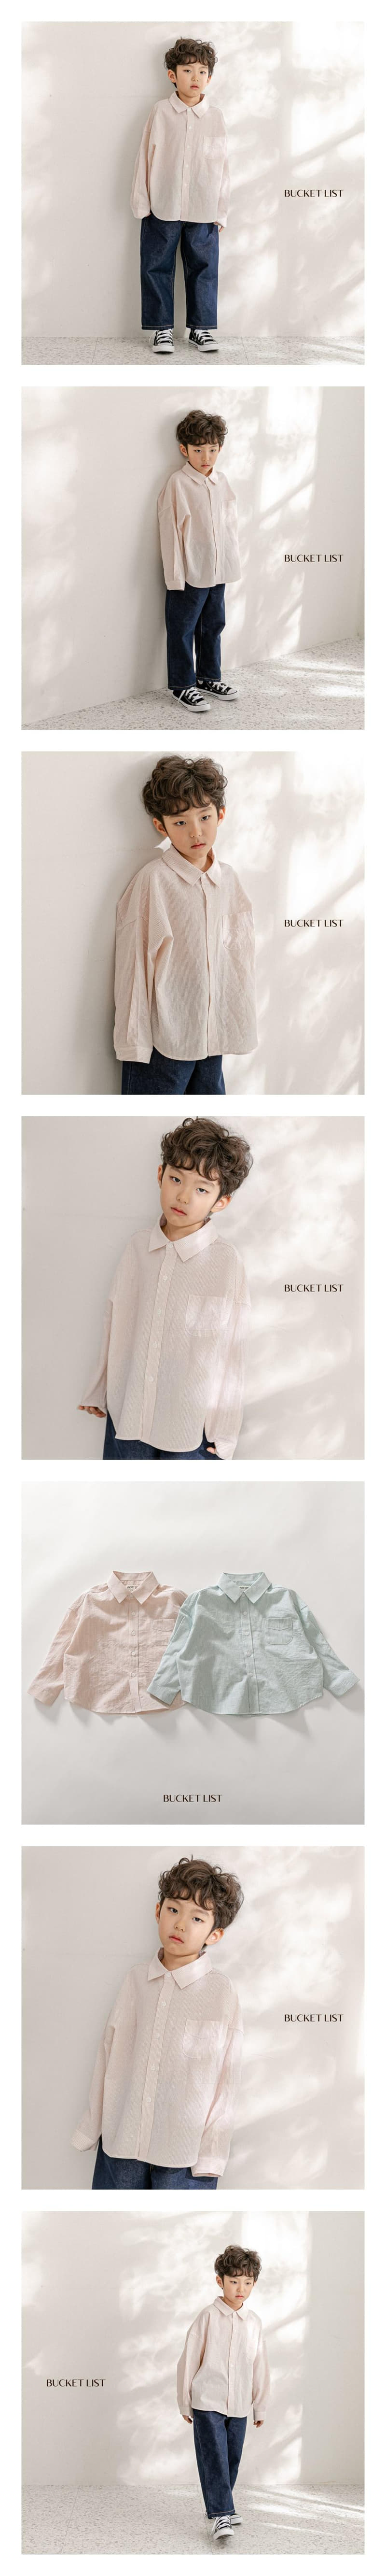 Bucket List - Korean Children Fashion - #prettylittlegirls - Stripes Over Shirt